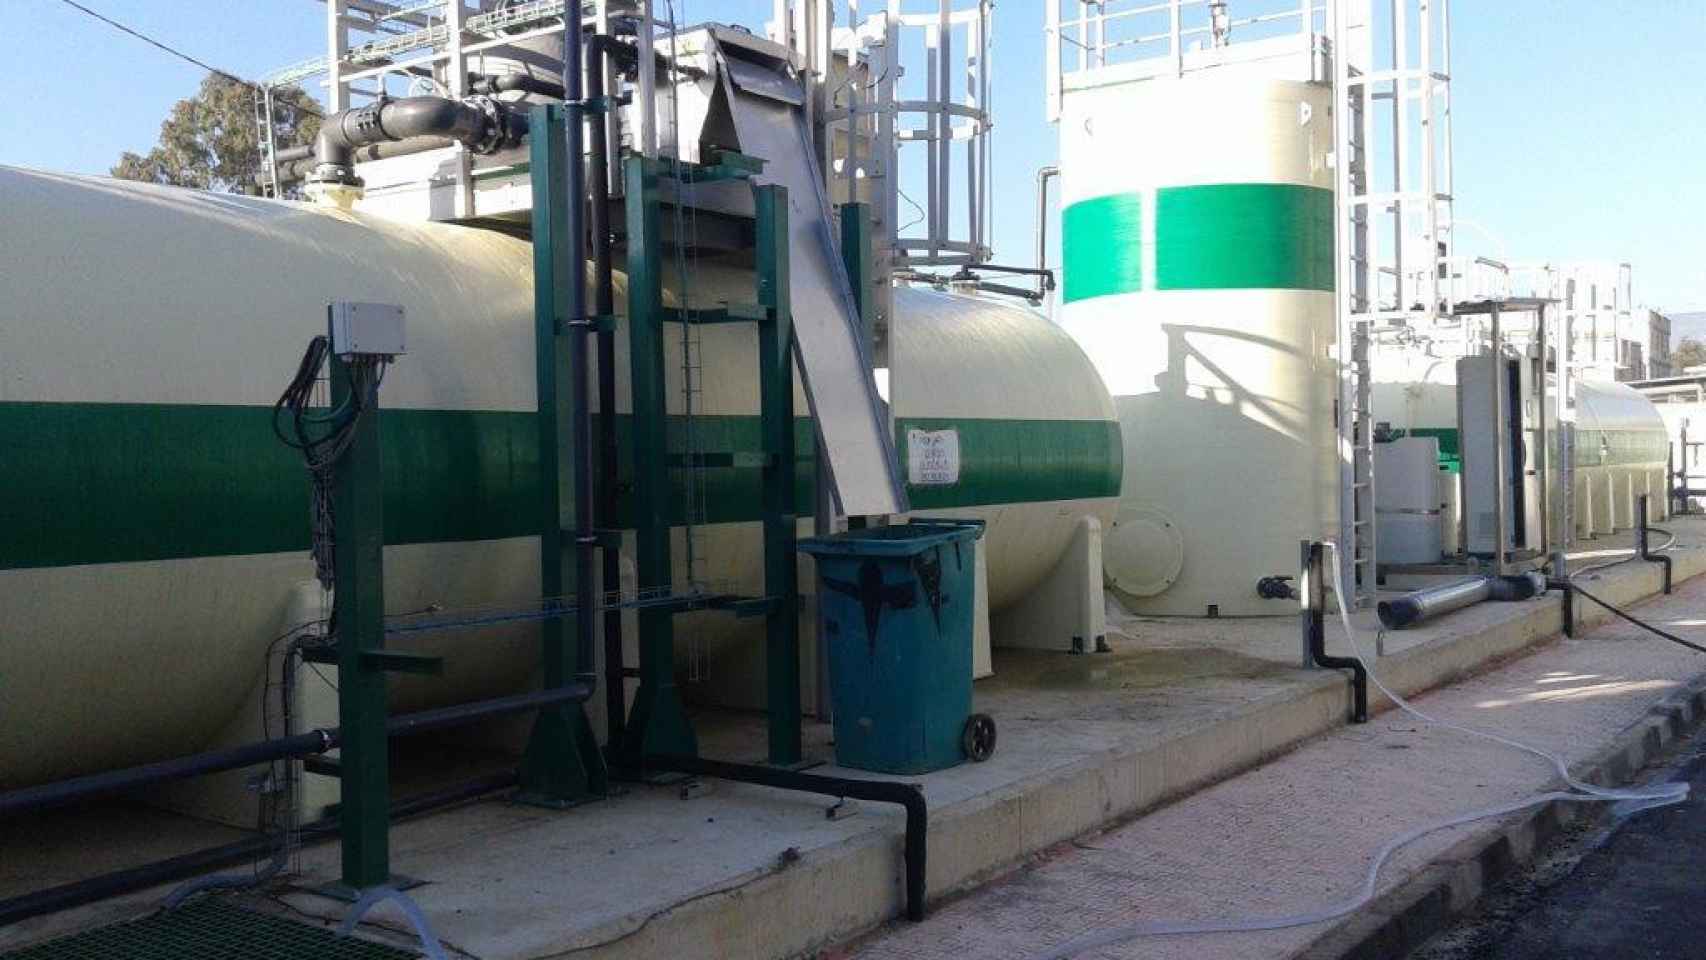 Planta de tratamiento de aguas de Lef Ingenieros, una de las 18 empresas en crisis